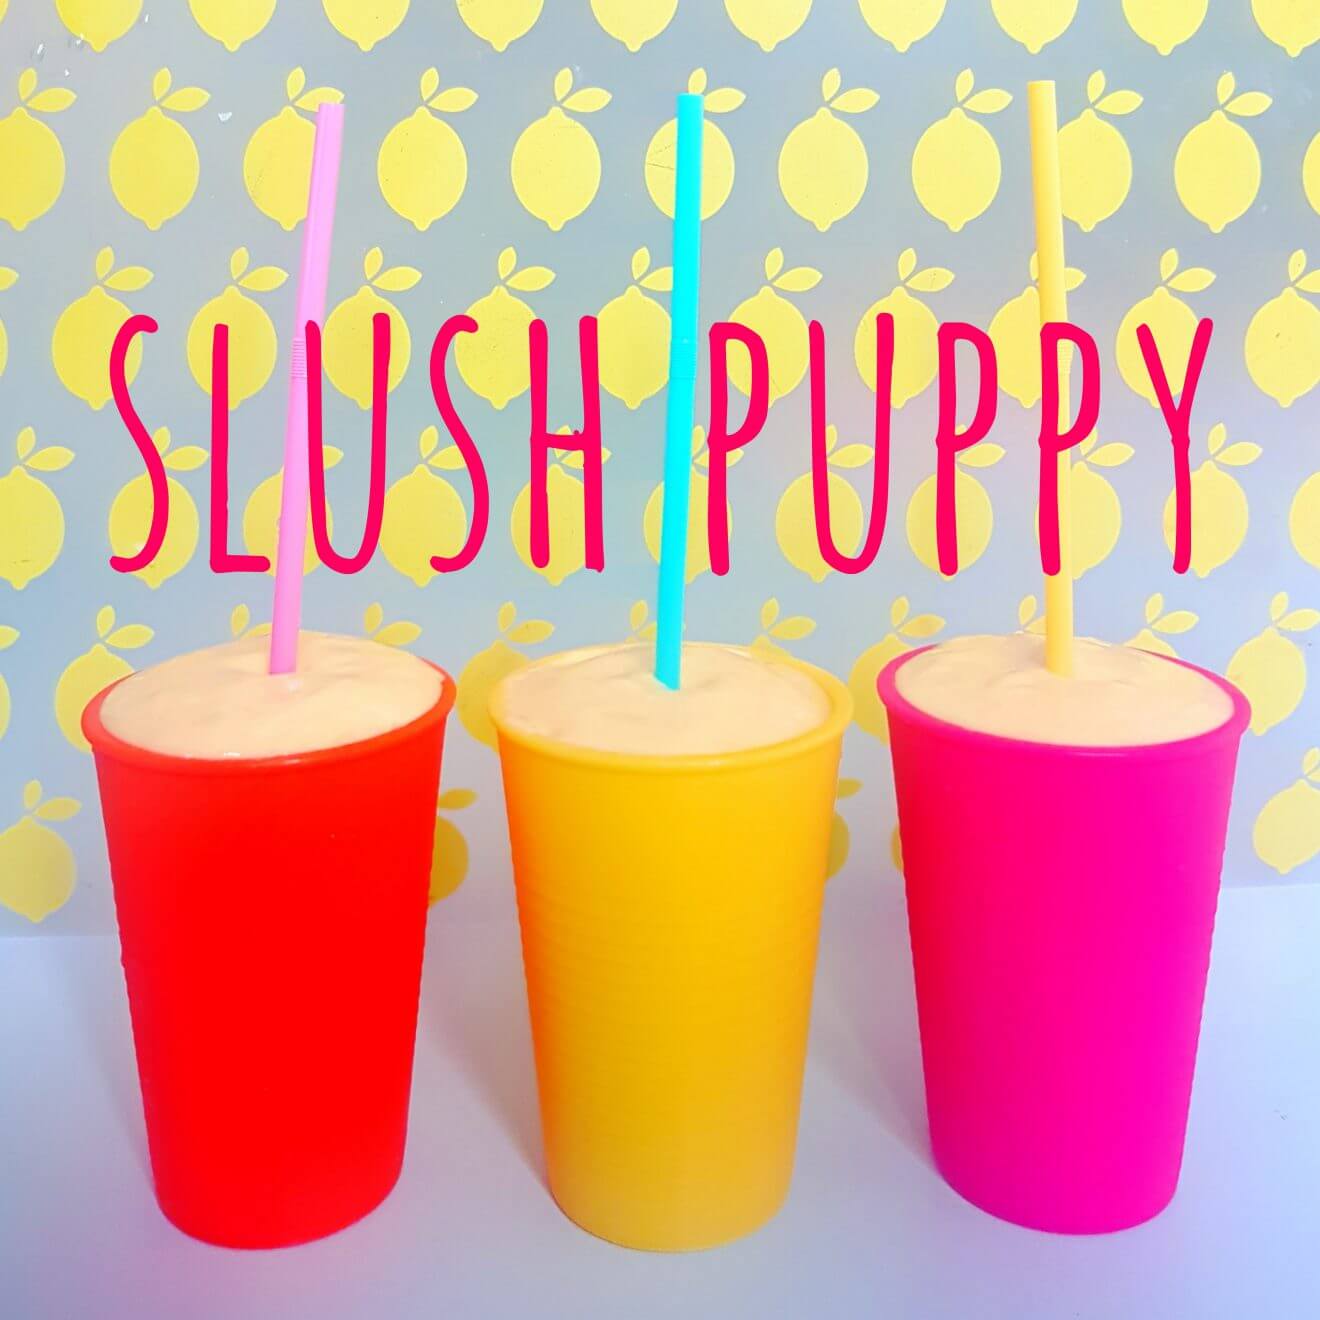 Slush puppy en schepijs: een gezond recept